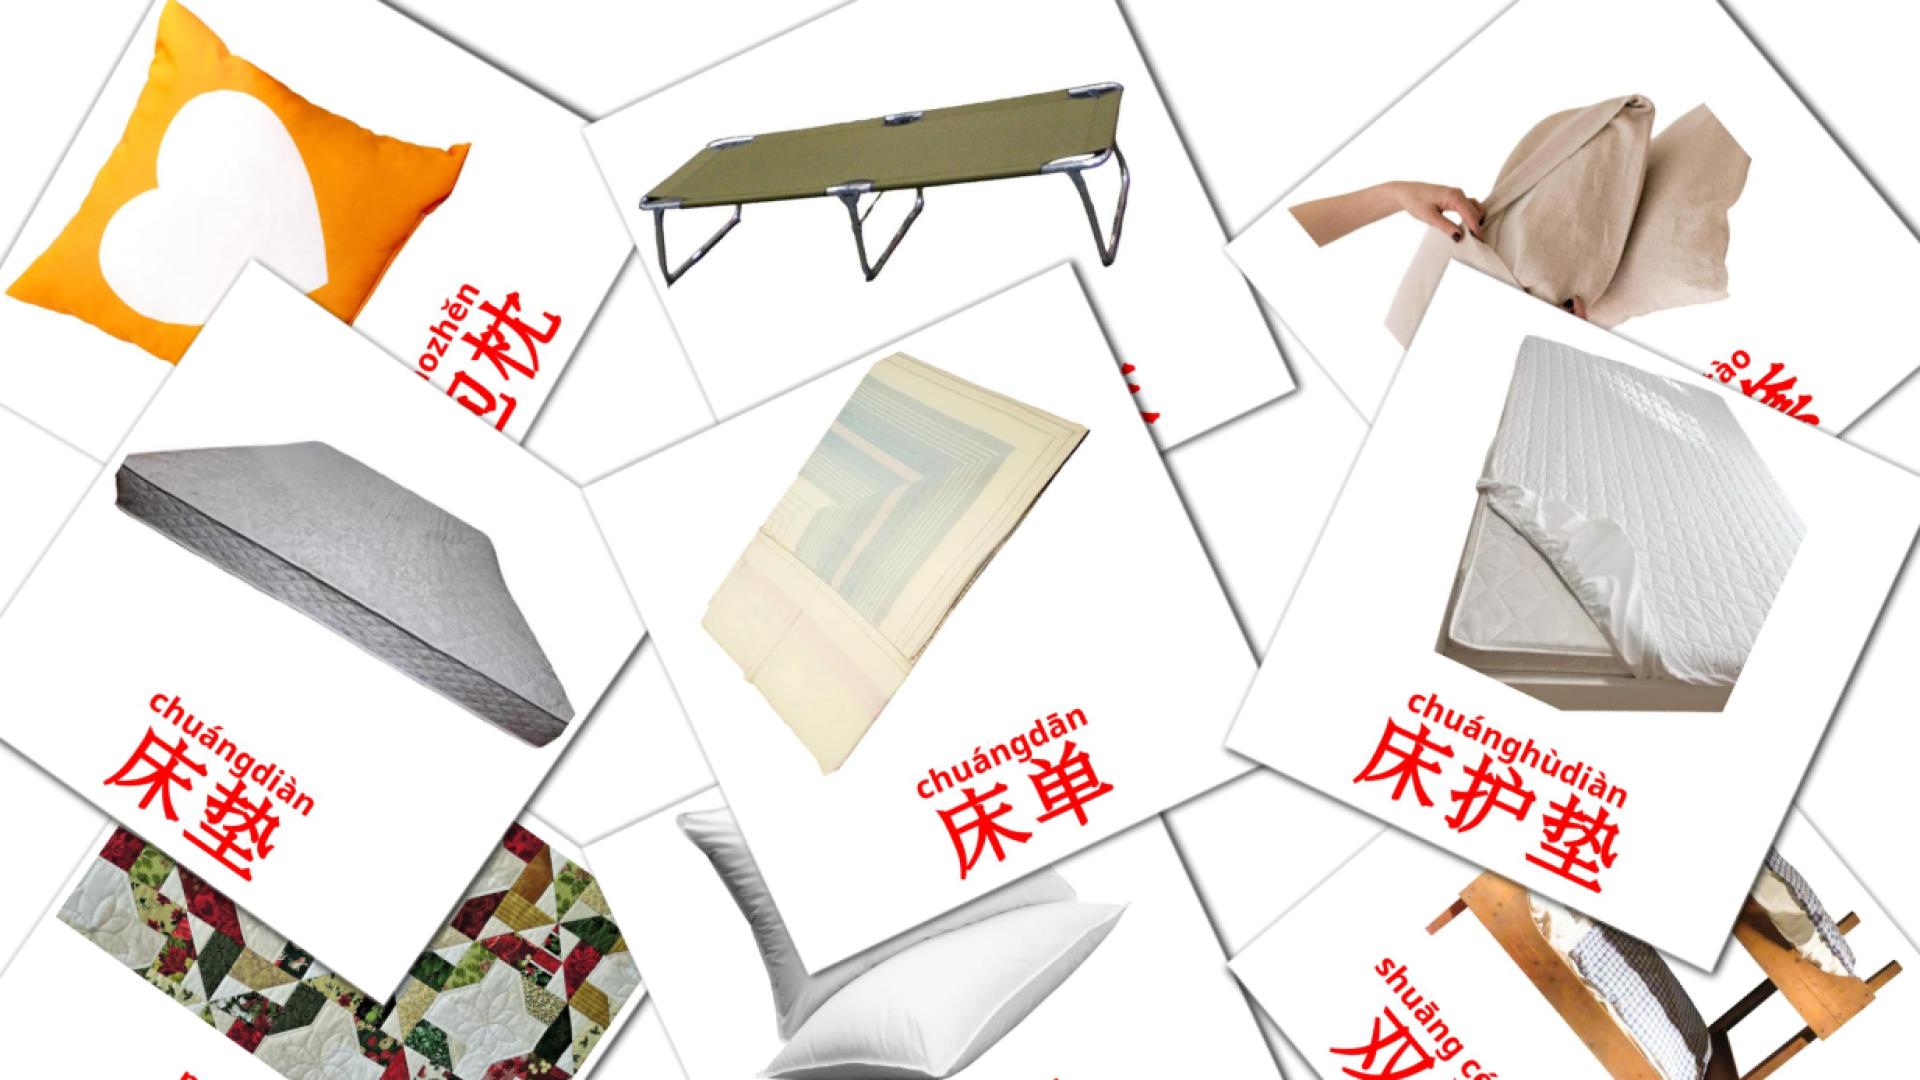 Bett - Chinesisch(Vereinfacht) Vokabelkarten